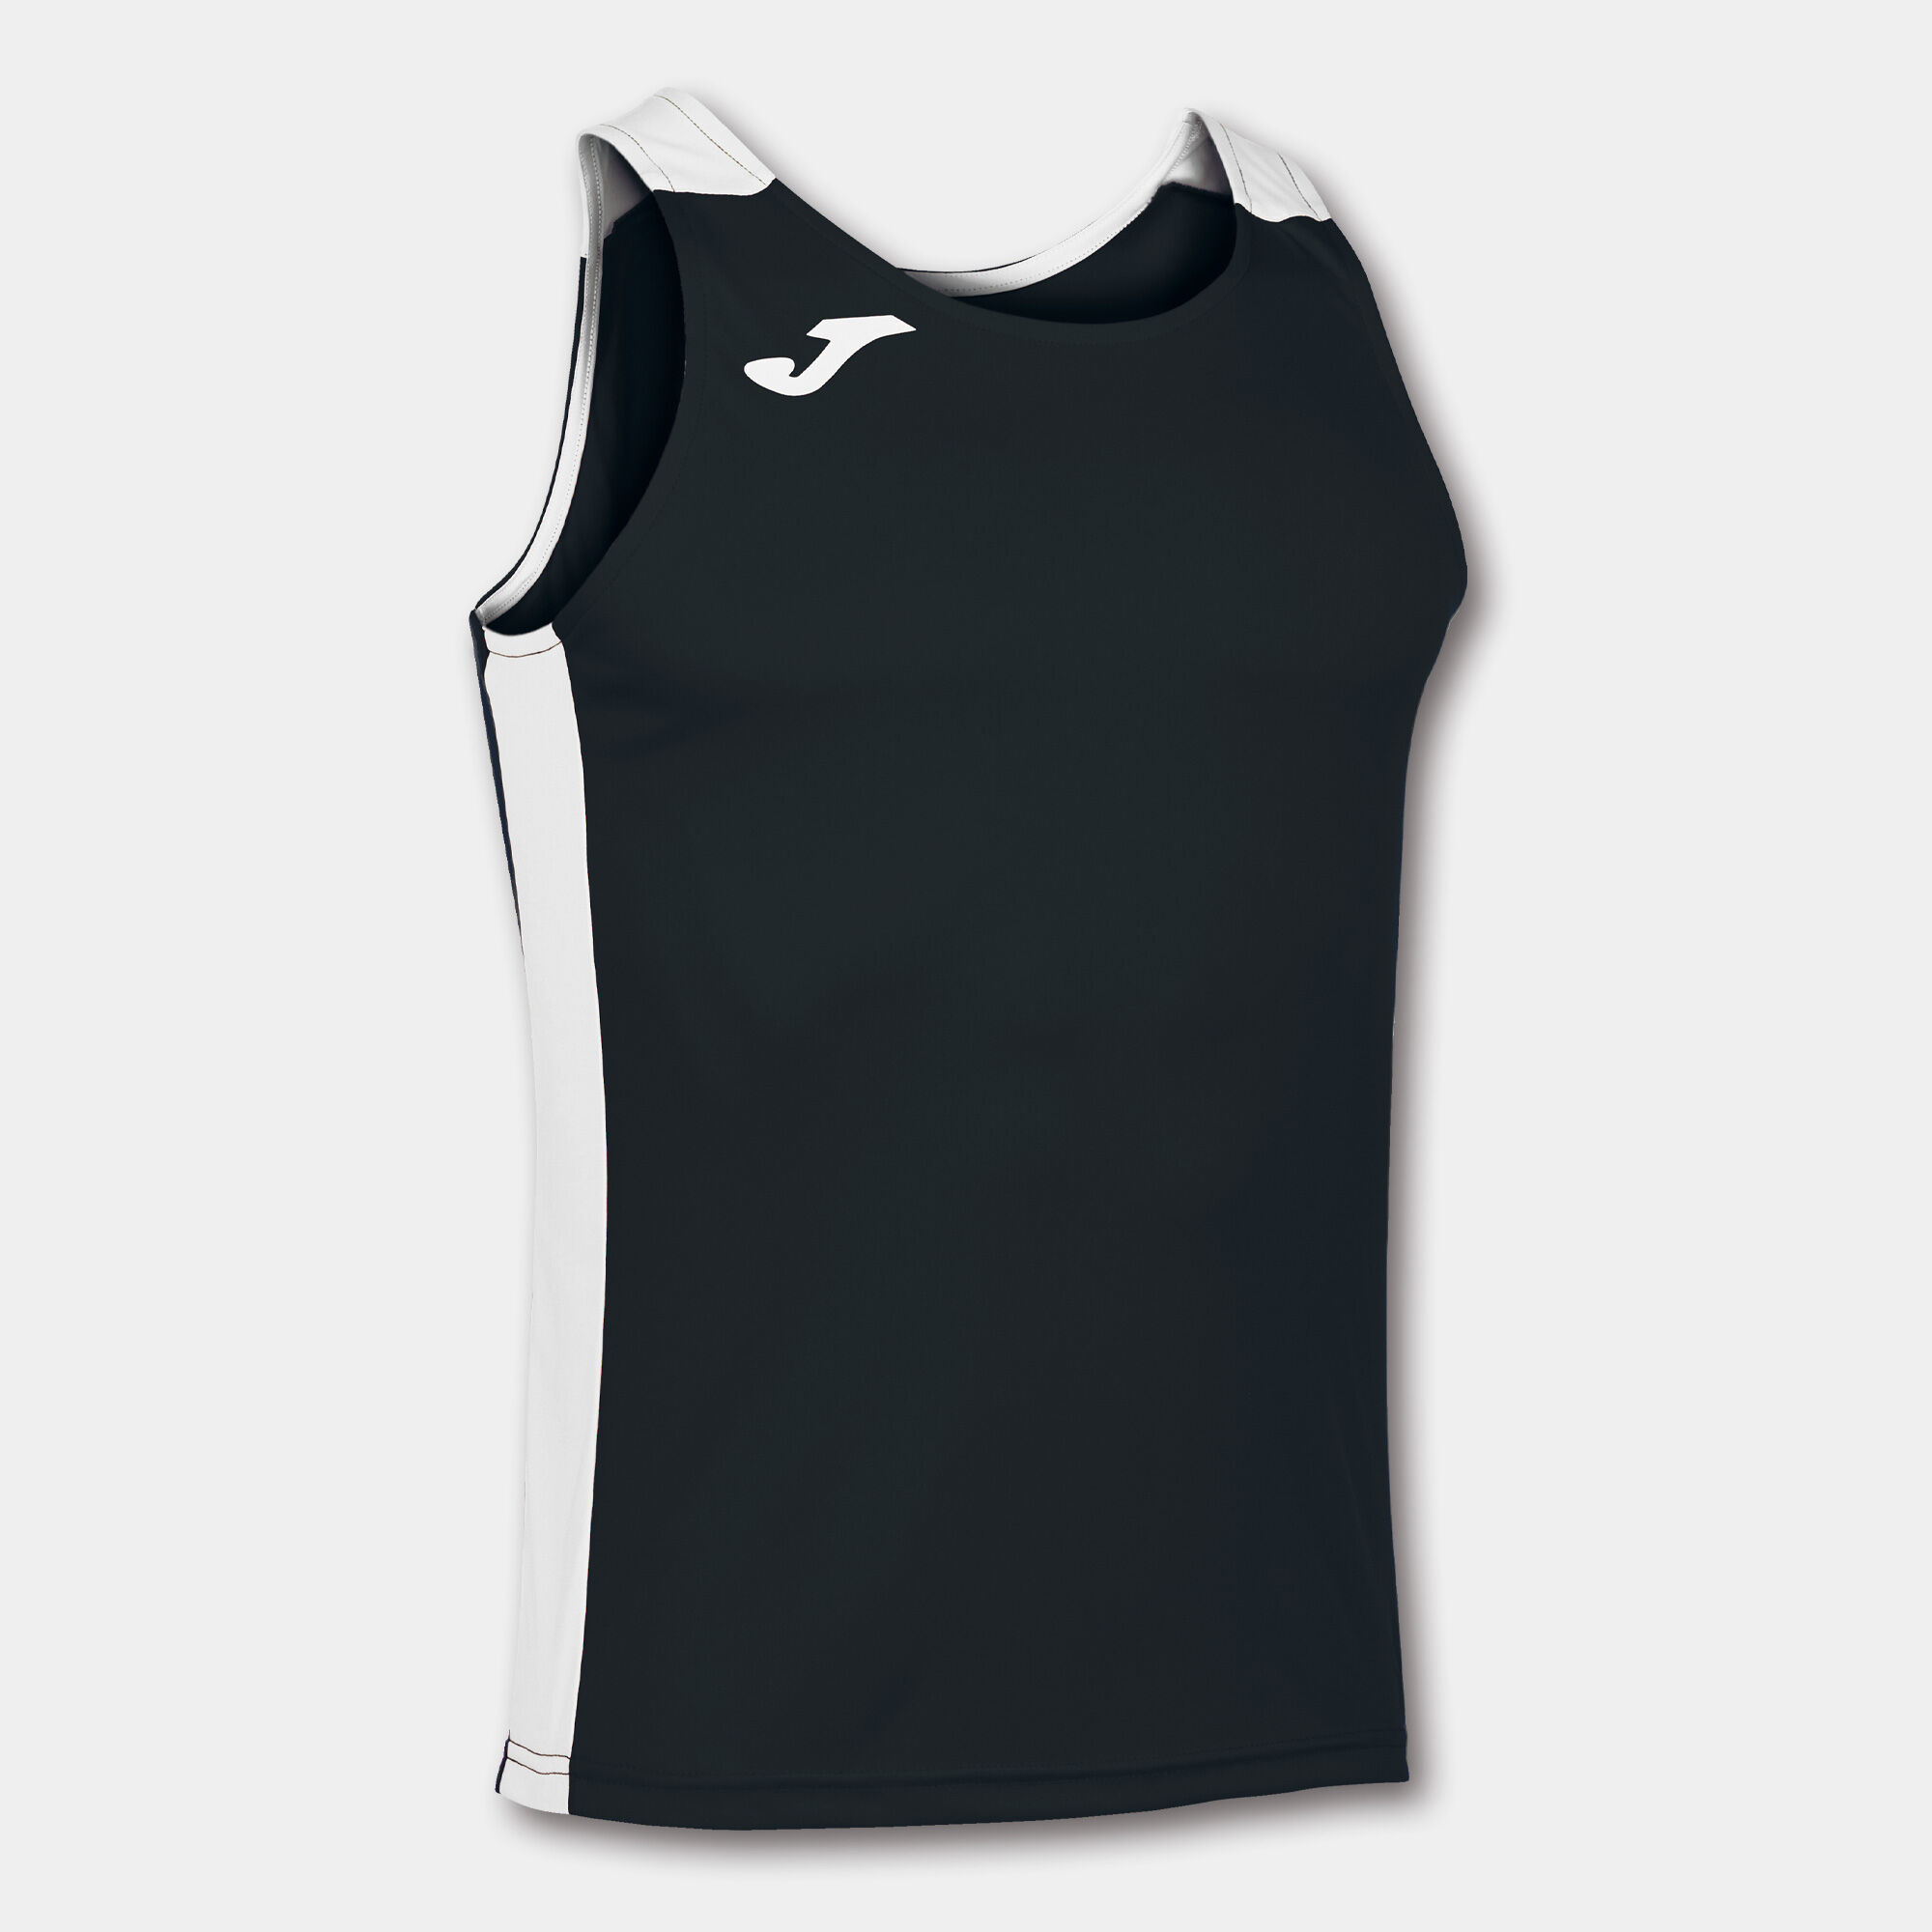 Schulterriemen-shirt mann Record II schwarz weiß